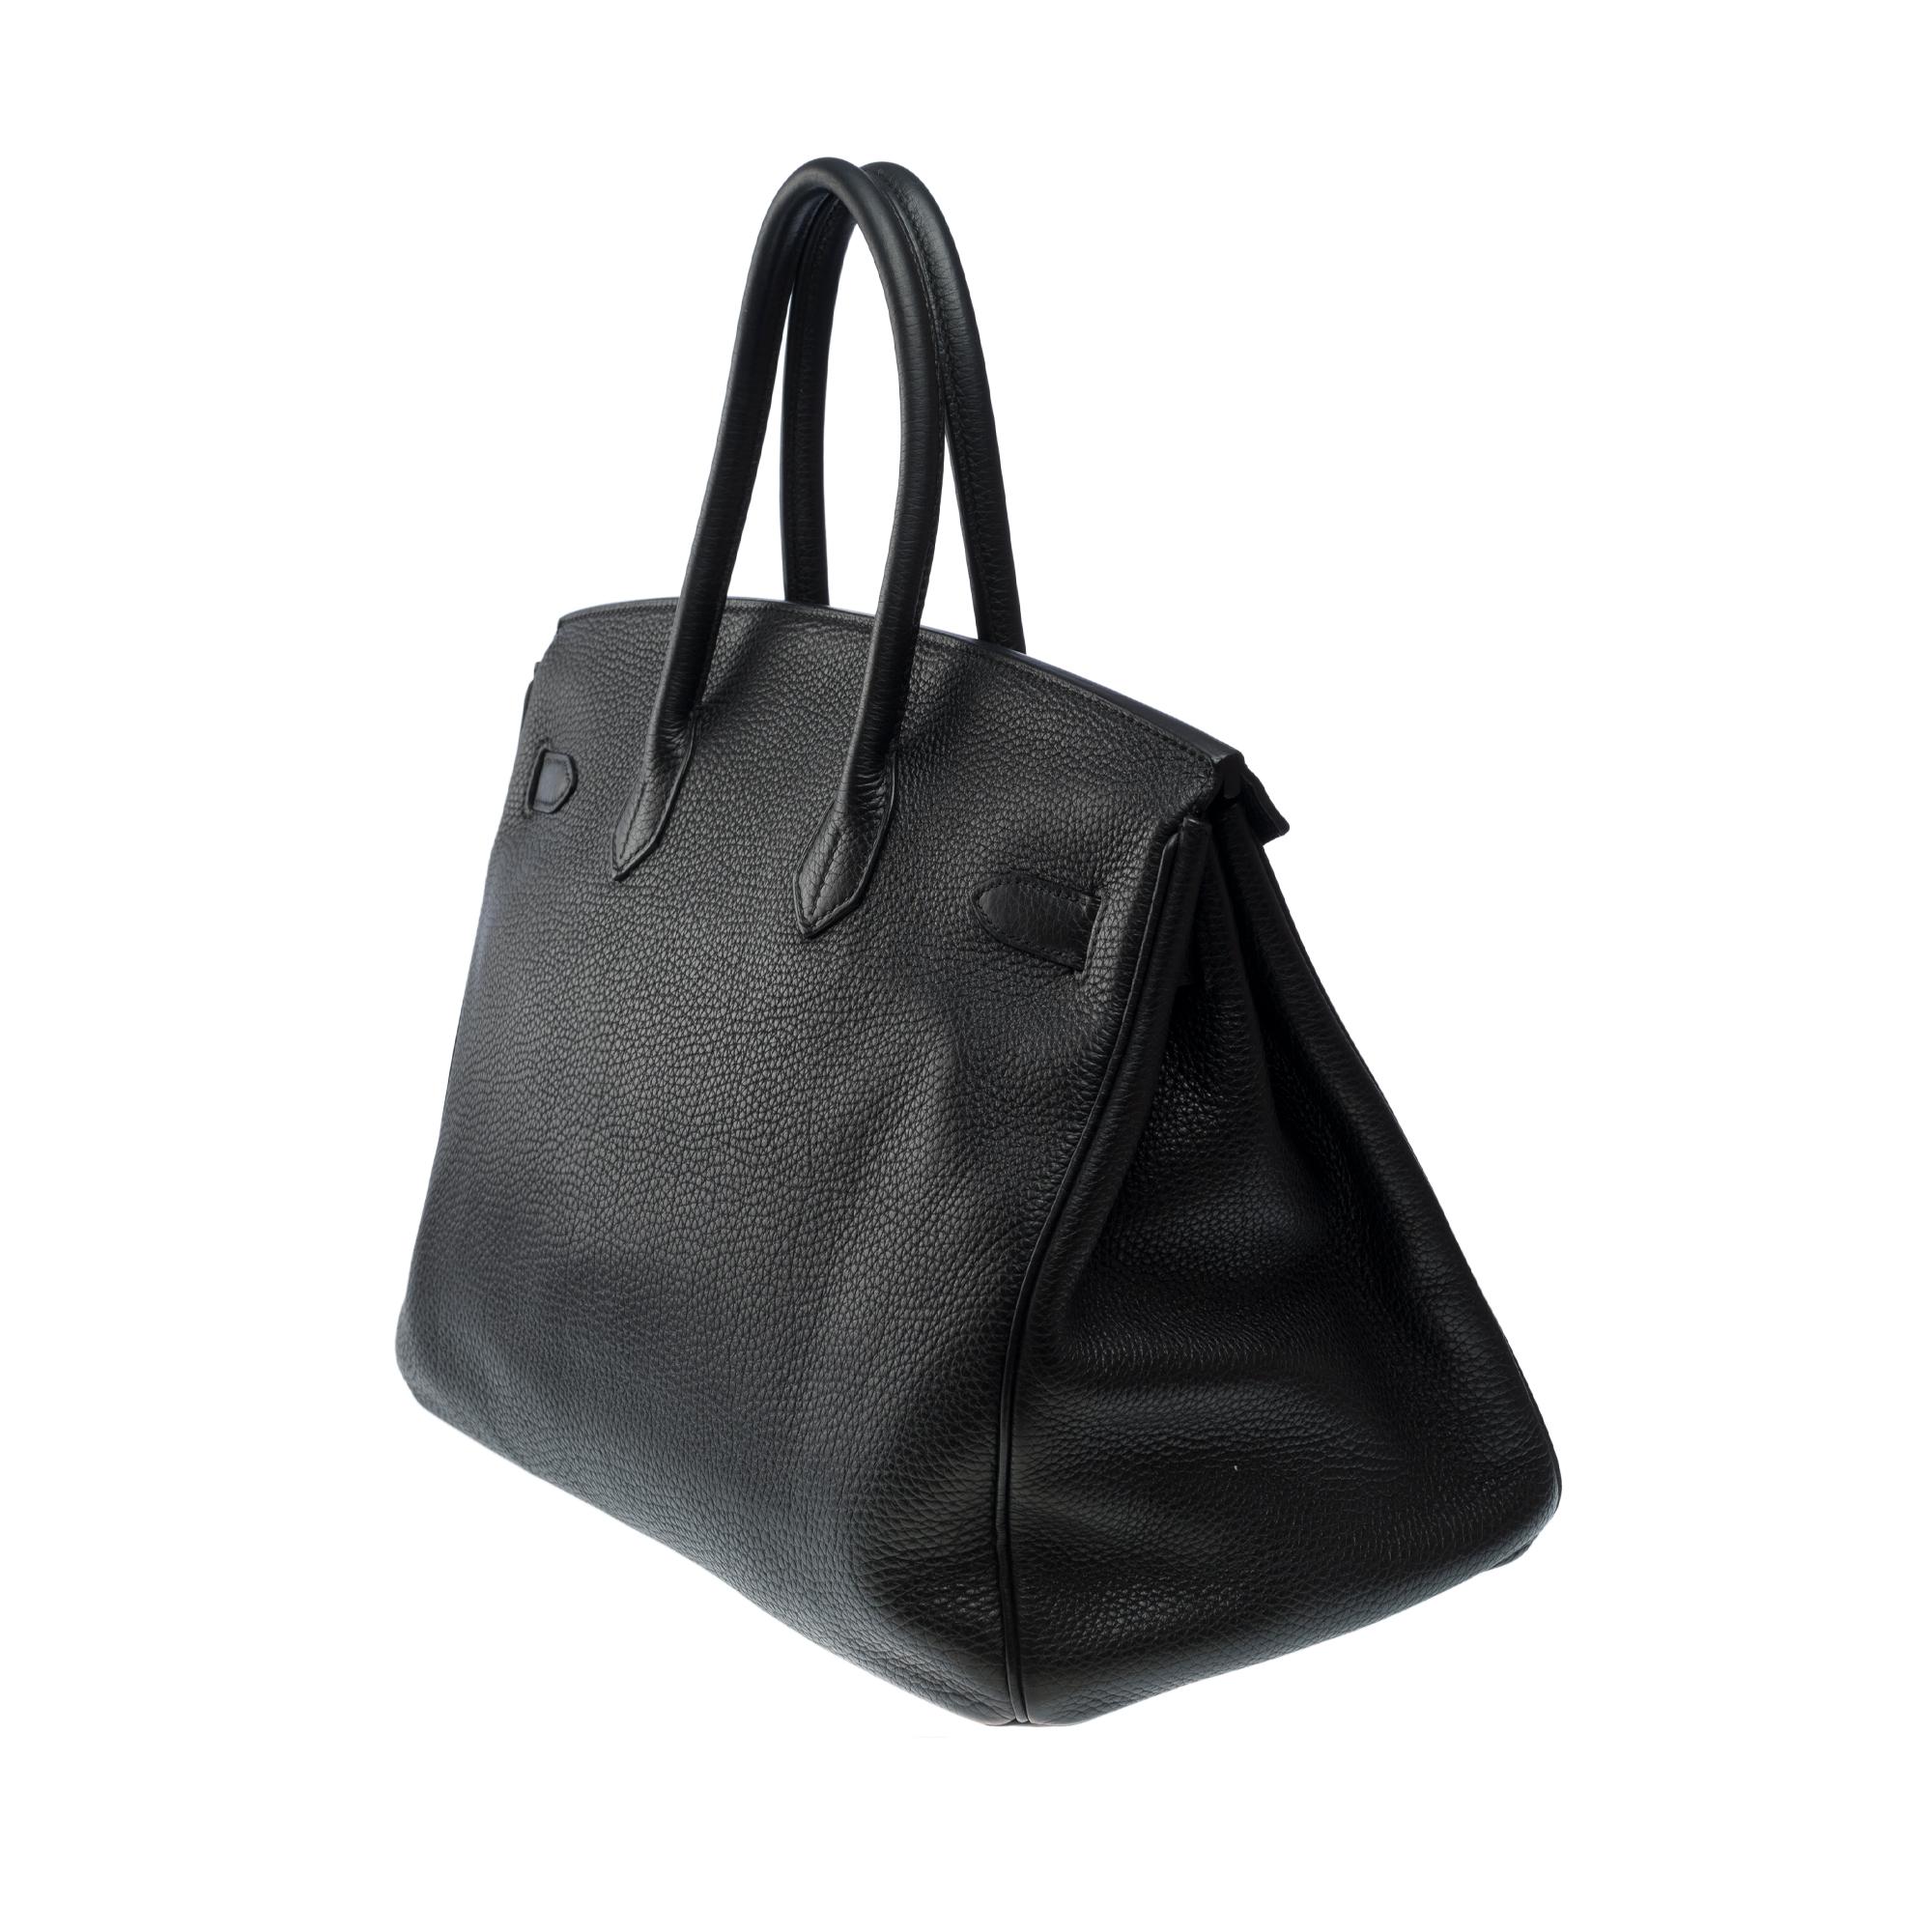 Stunning Hermes Birkin 30 handbag in Black Togo leather, SHW For Sale 2